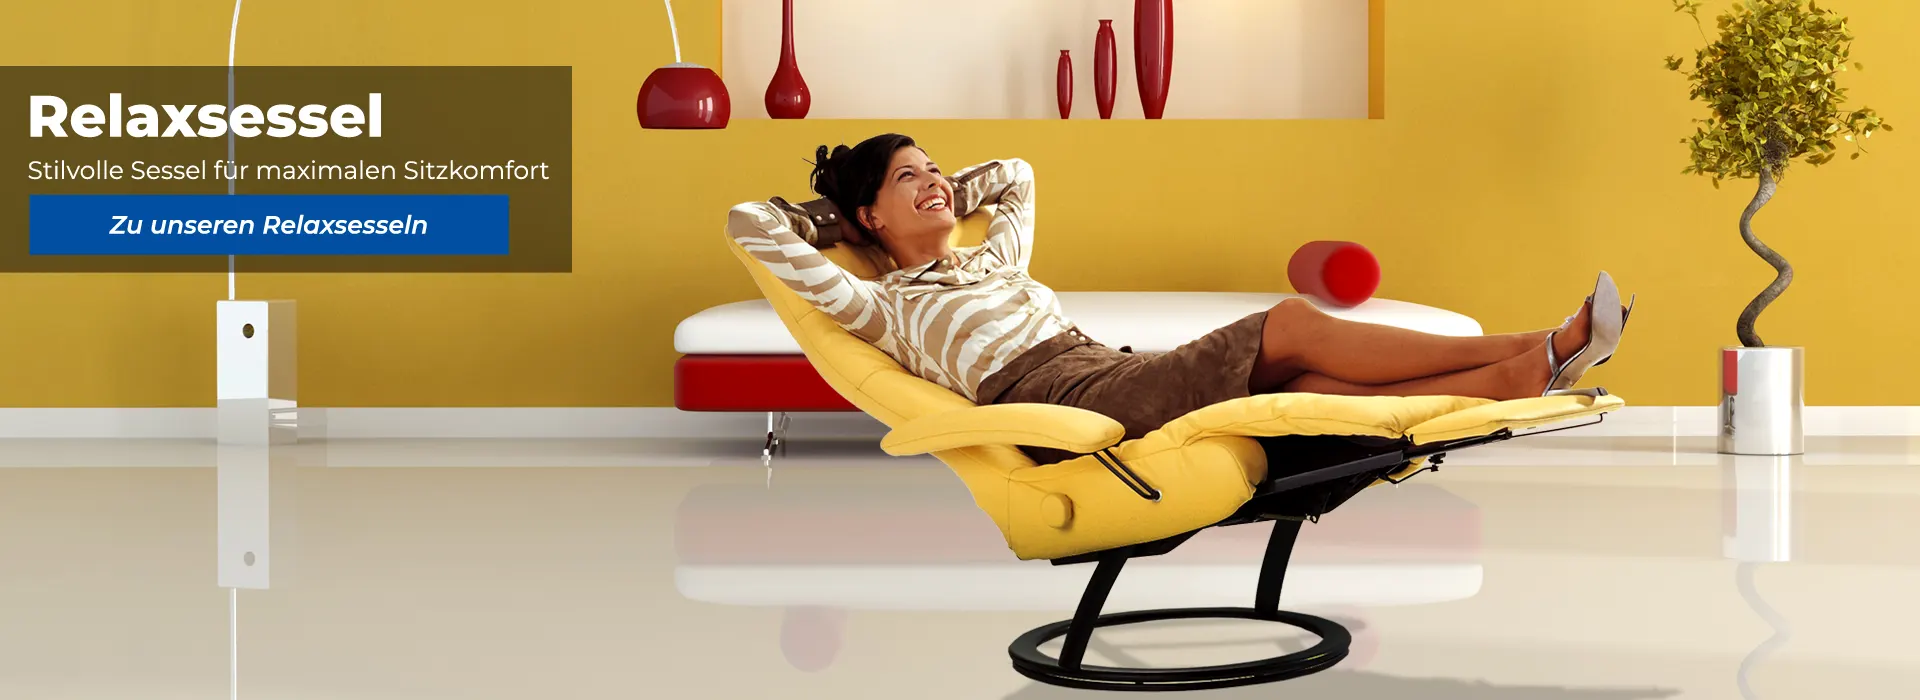 Relaxsessel – Stilvolle Sessel für maximalen Sitzkonfort